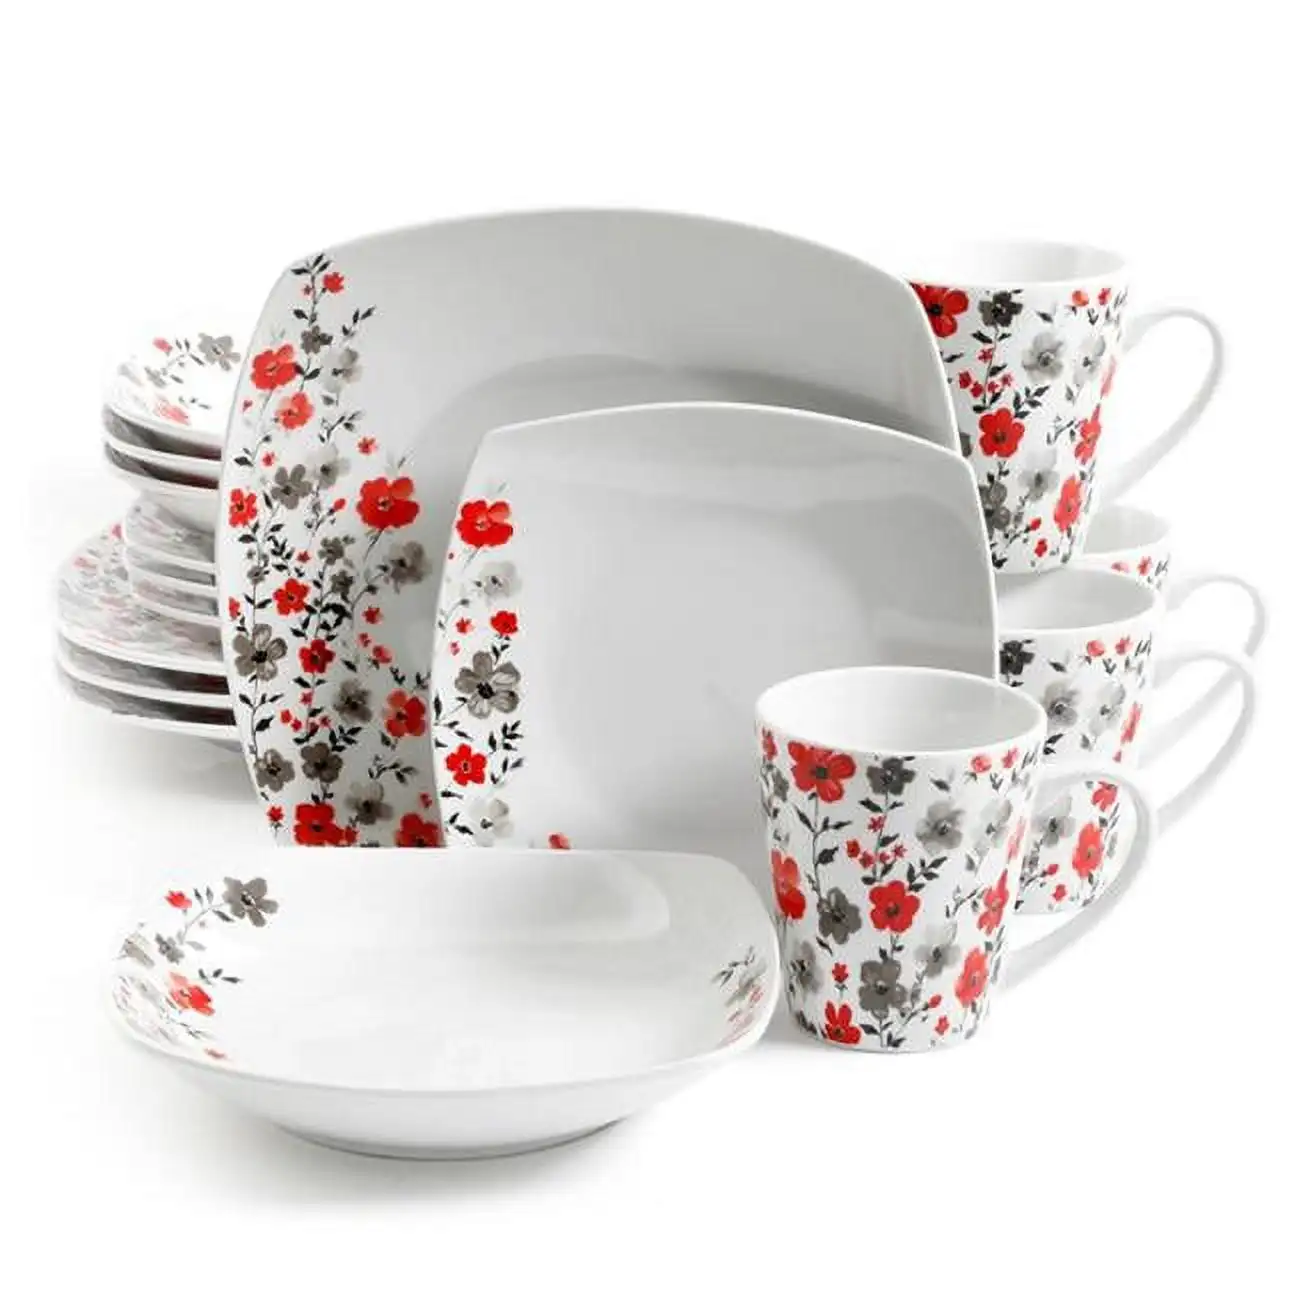 

Набор красивой керамической посуды Rosetta с цветочным принтом из 16 предметов в белом цвете